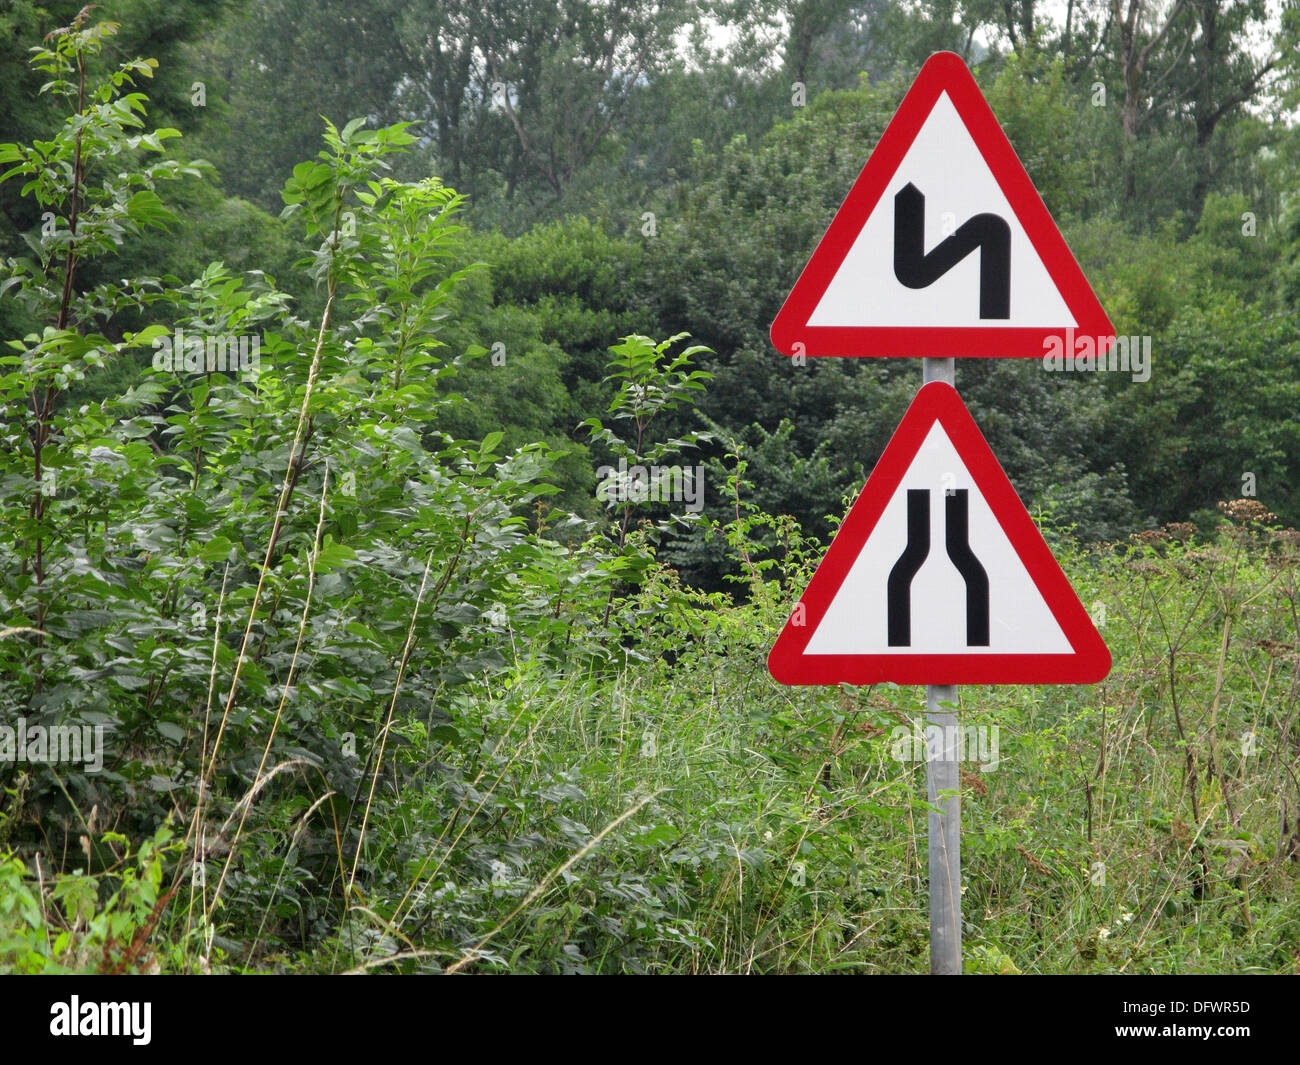 Rotes Dreieck Vorsicht und Achtung Verkehrszeichen für eine Verengung  Straße und kurvenreiche Straße, UK Stockfotografie - Alamy